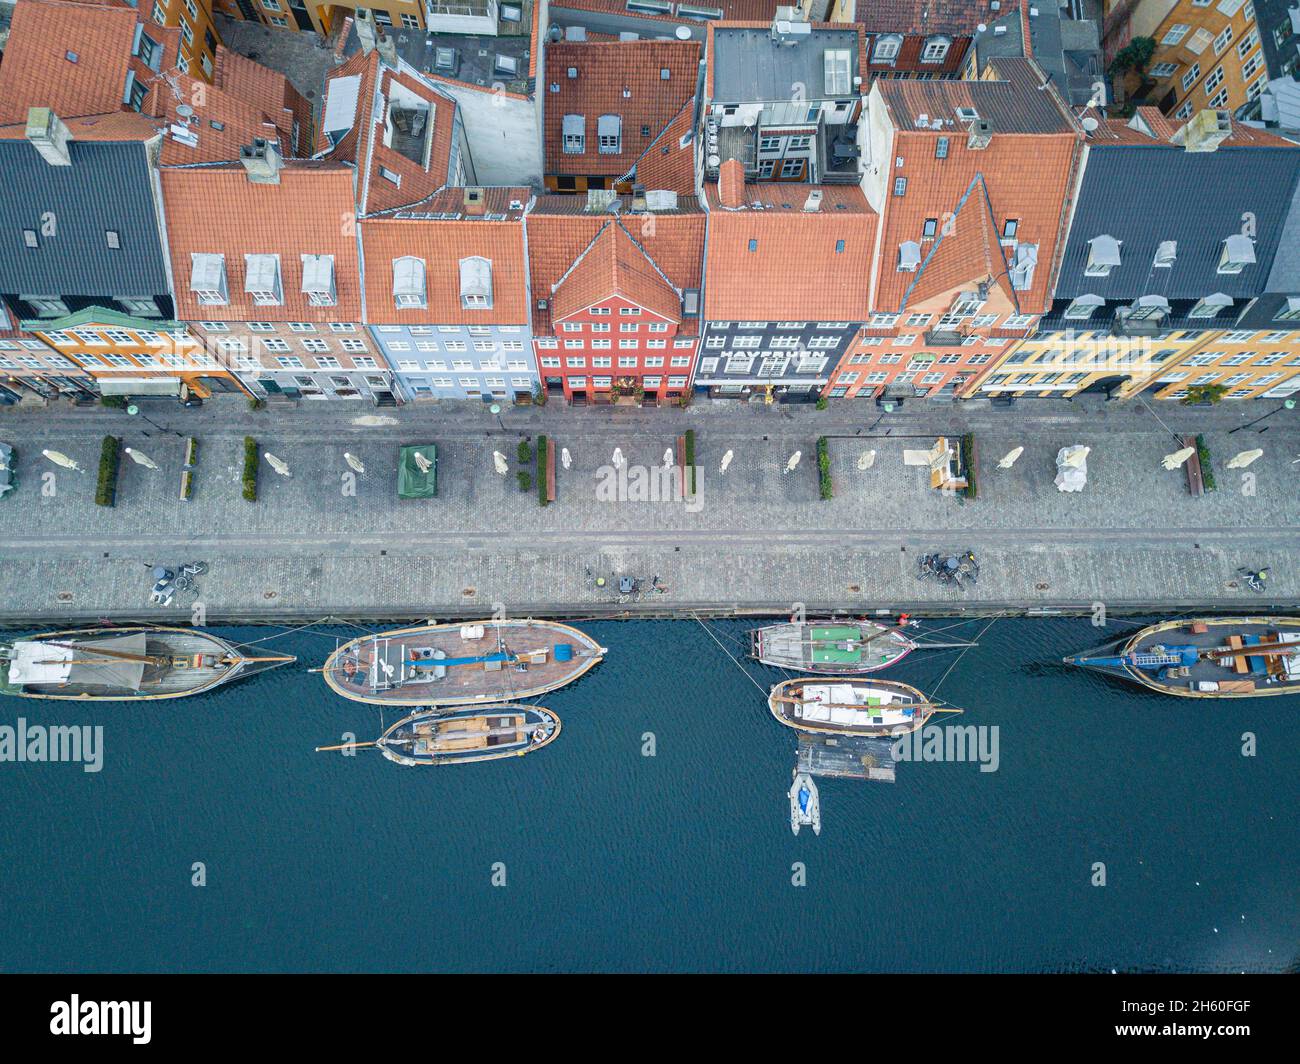 Vue aérienne de Nyhavn à Copenhague, Danemark Banque D'Images